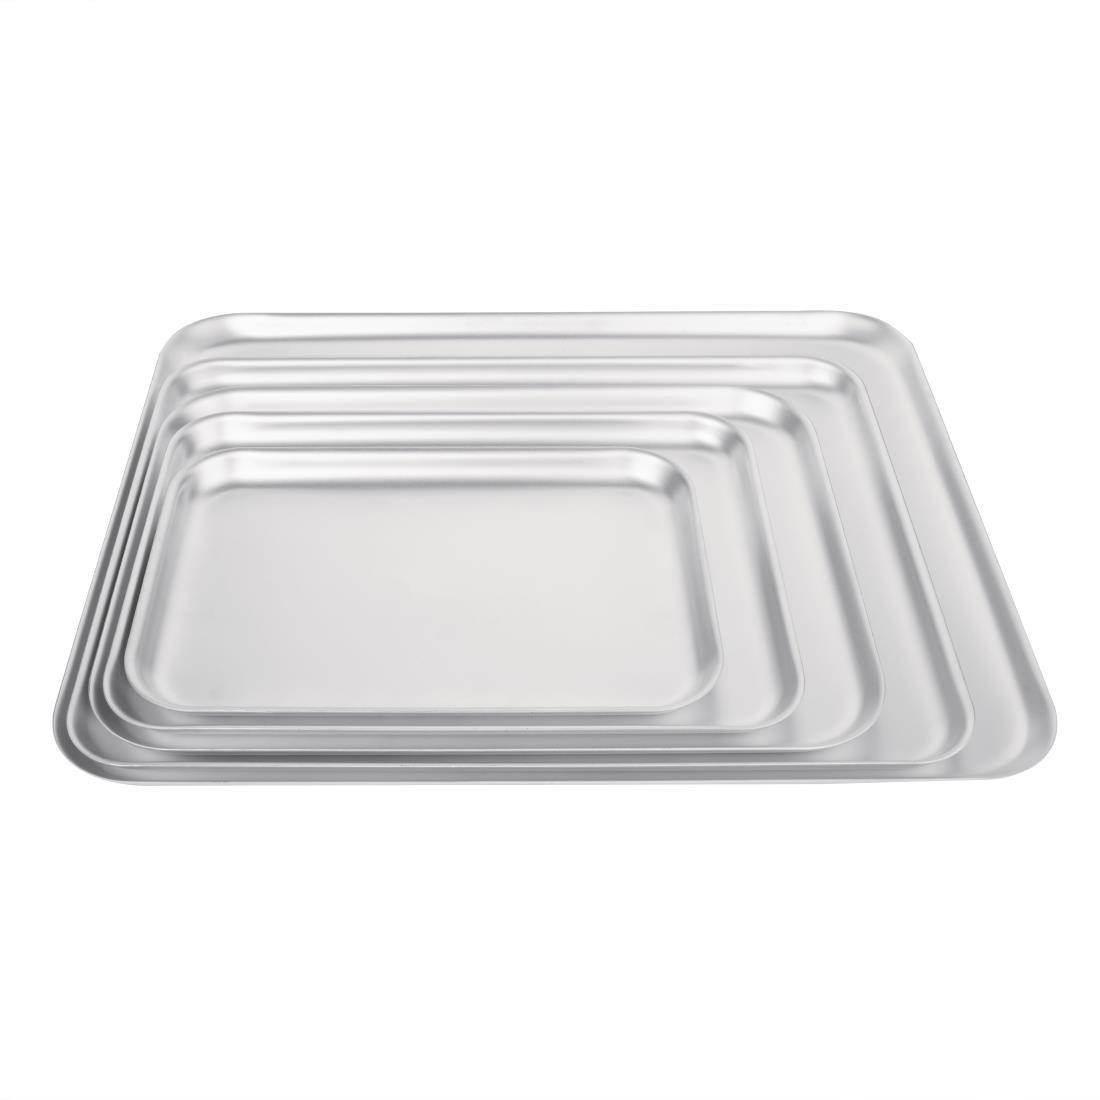 Vogue Aluminium Baking Tray 324 x 222mm - K442  - 3